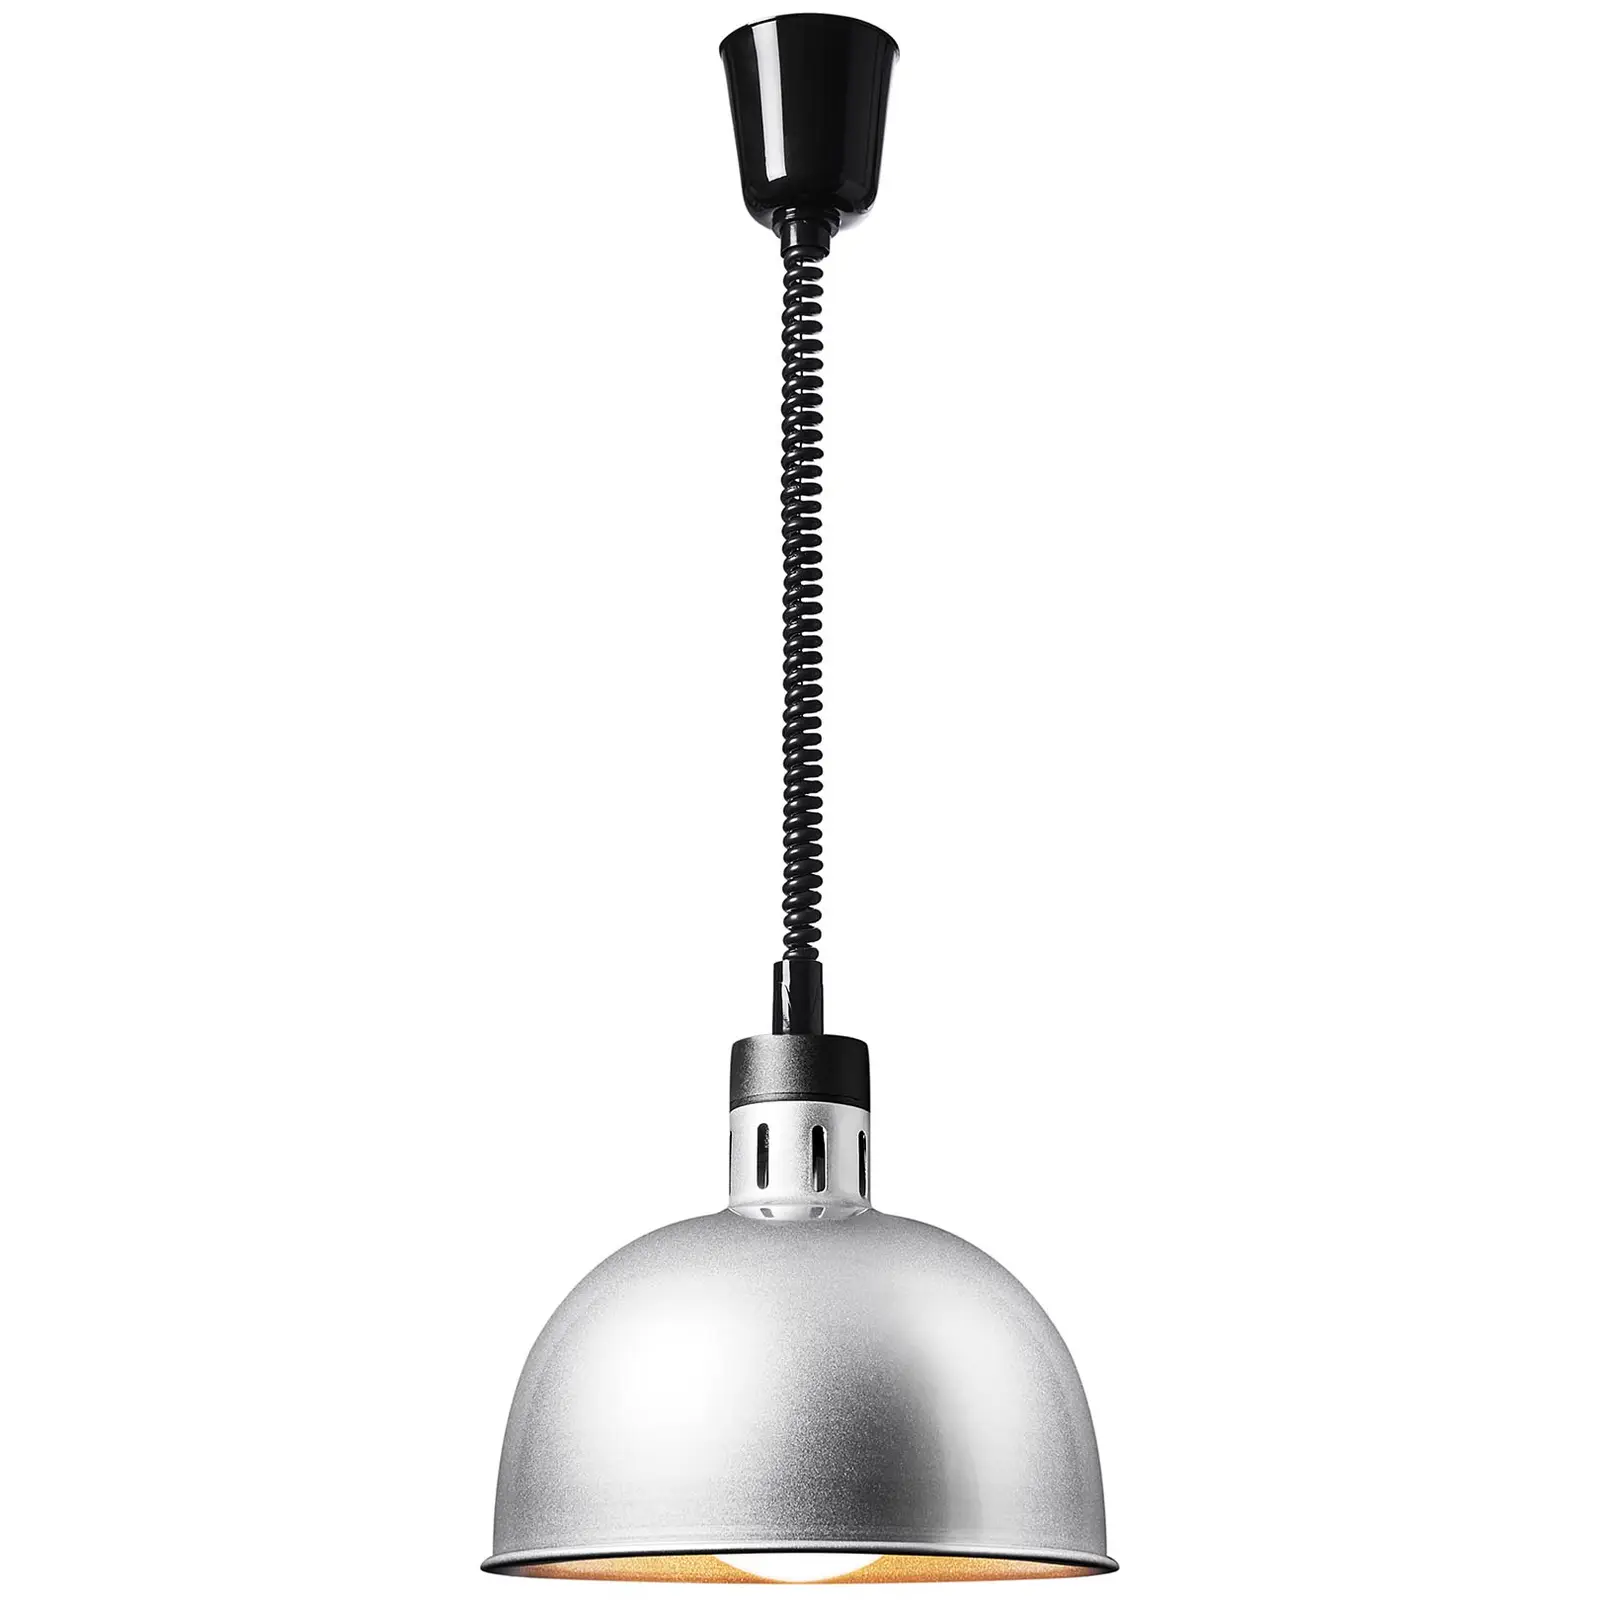 Lampe chauffante - Argent - 28.5 x 28.5 x 29 cm - Royal Catering - Acier